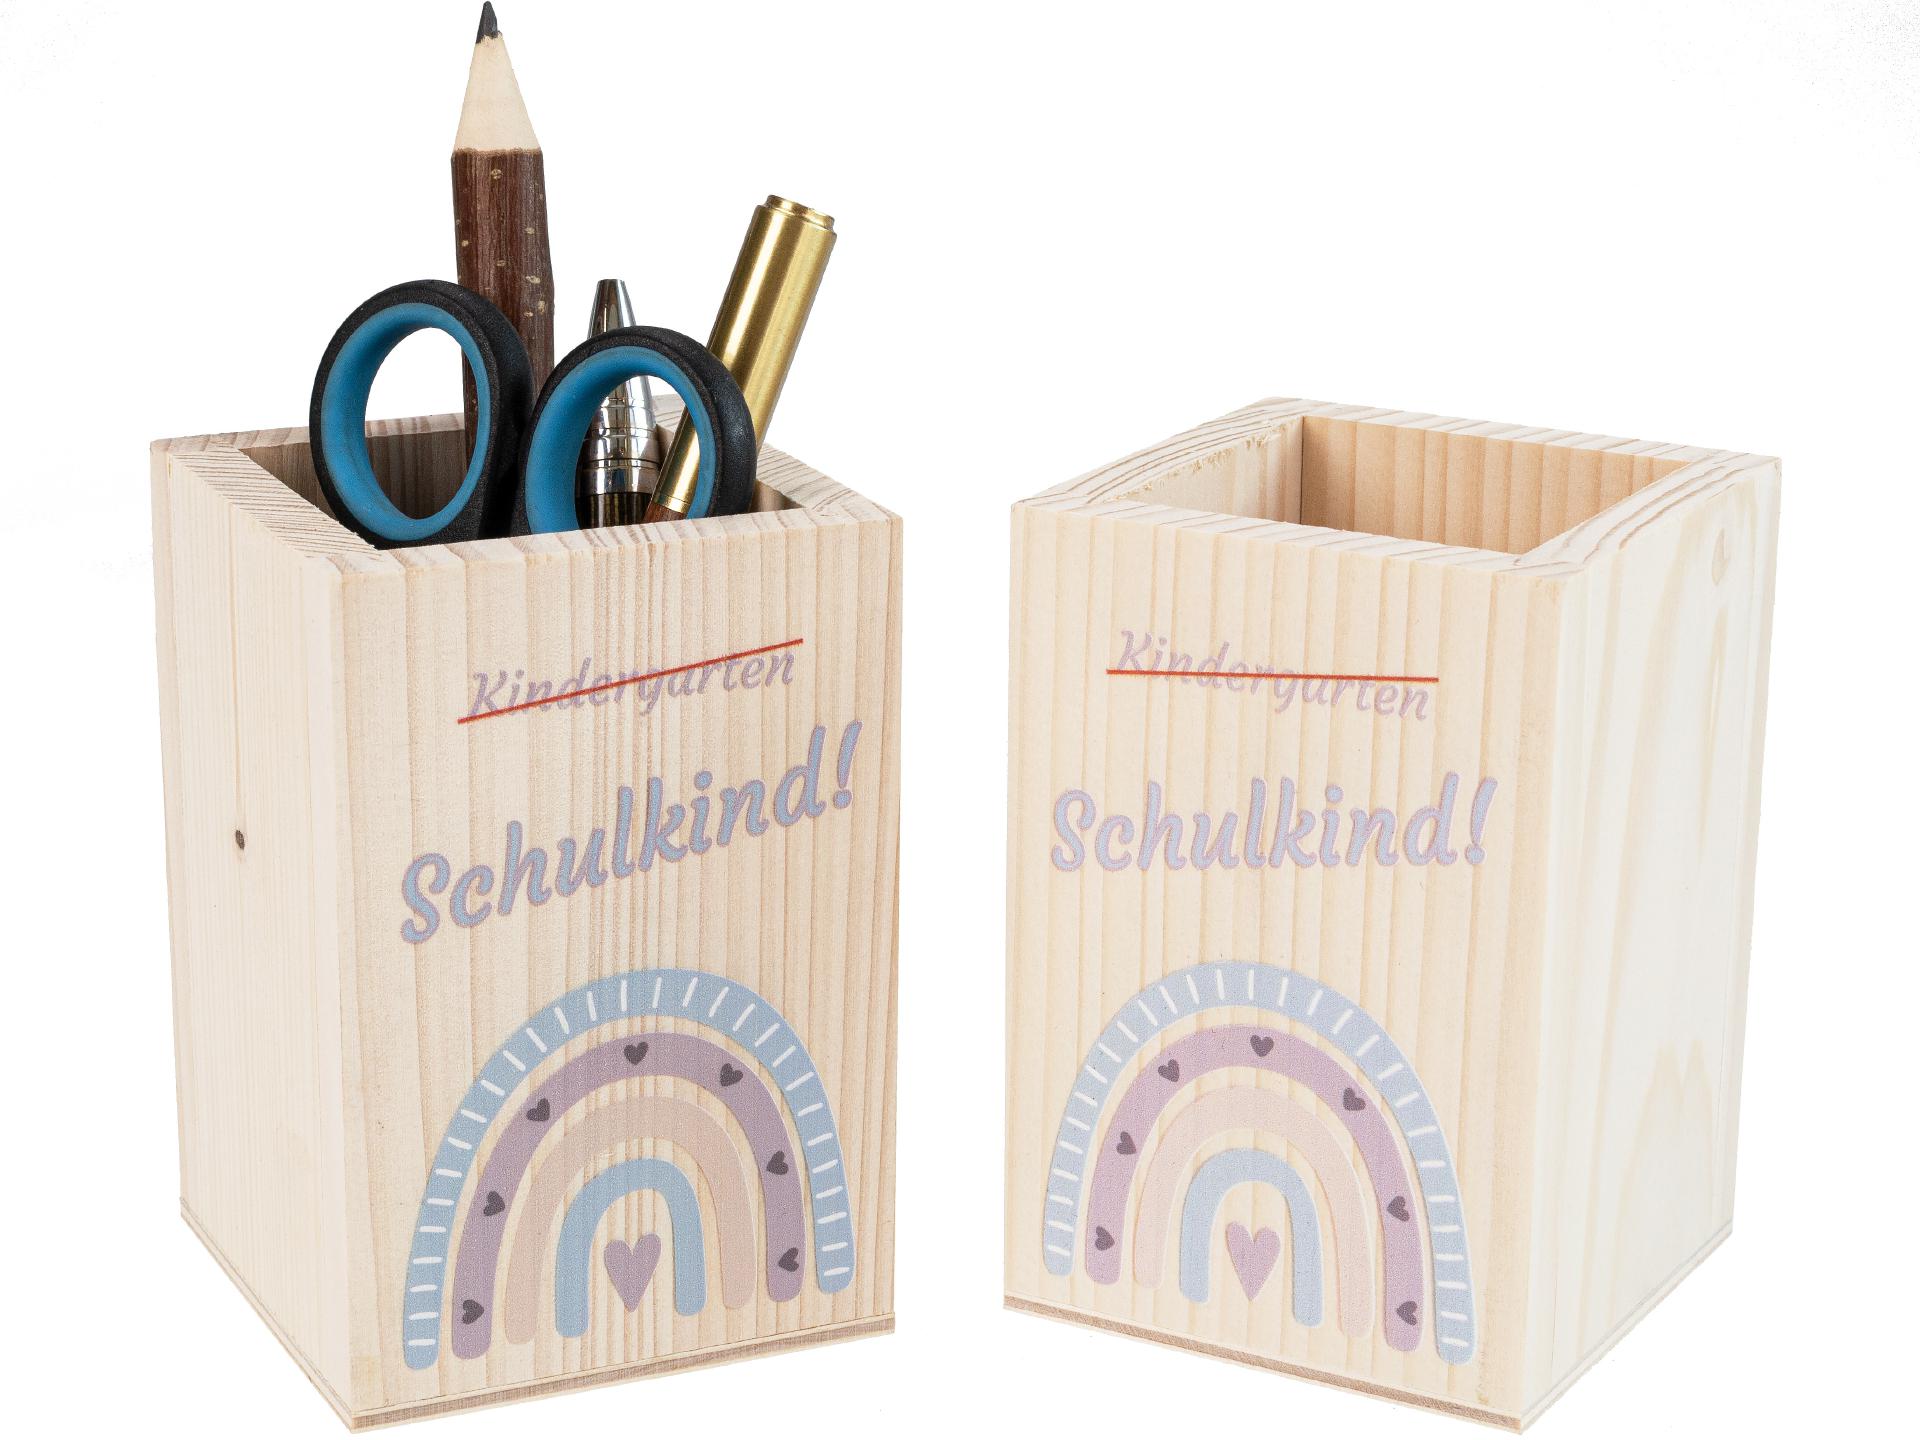 Holz Stiftebox "Schulkind" mit Regenbogenmotiv - Perfekt zur Einschulung